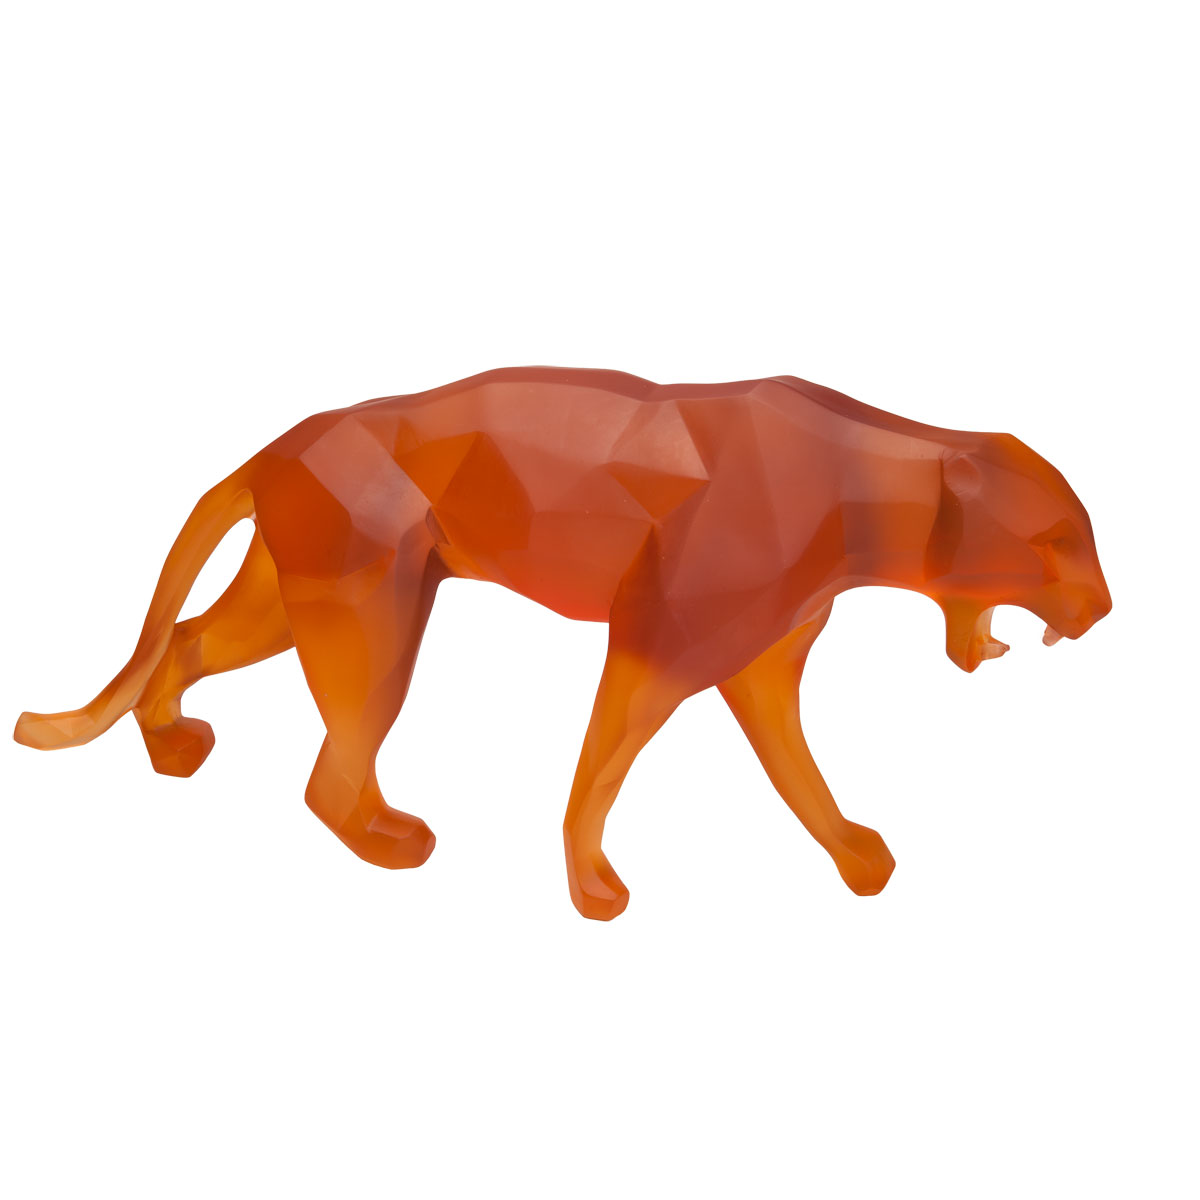 Daum Wild Panther in Orange by Richard Orlinski, Limited Edition Sculpture